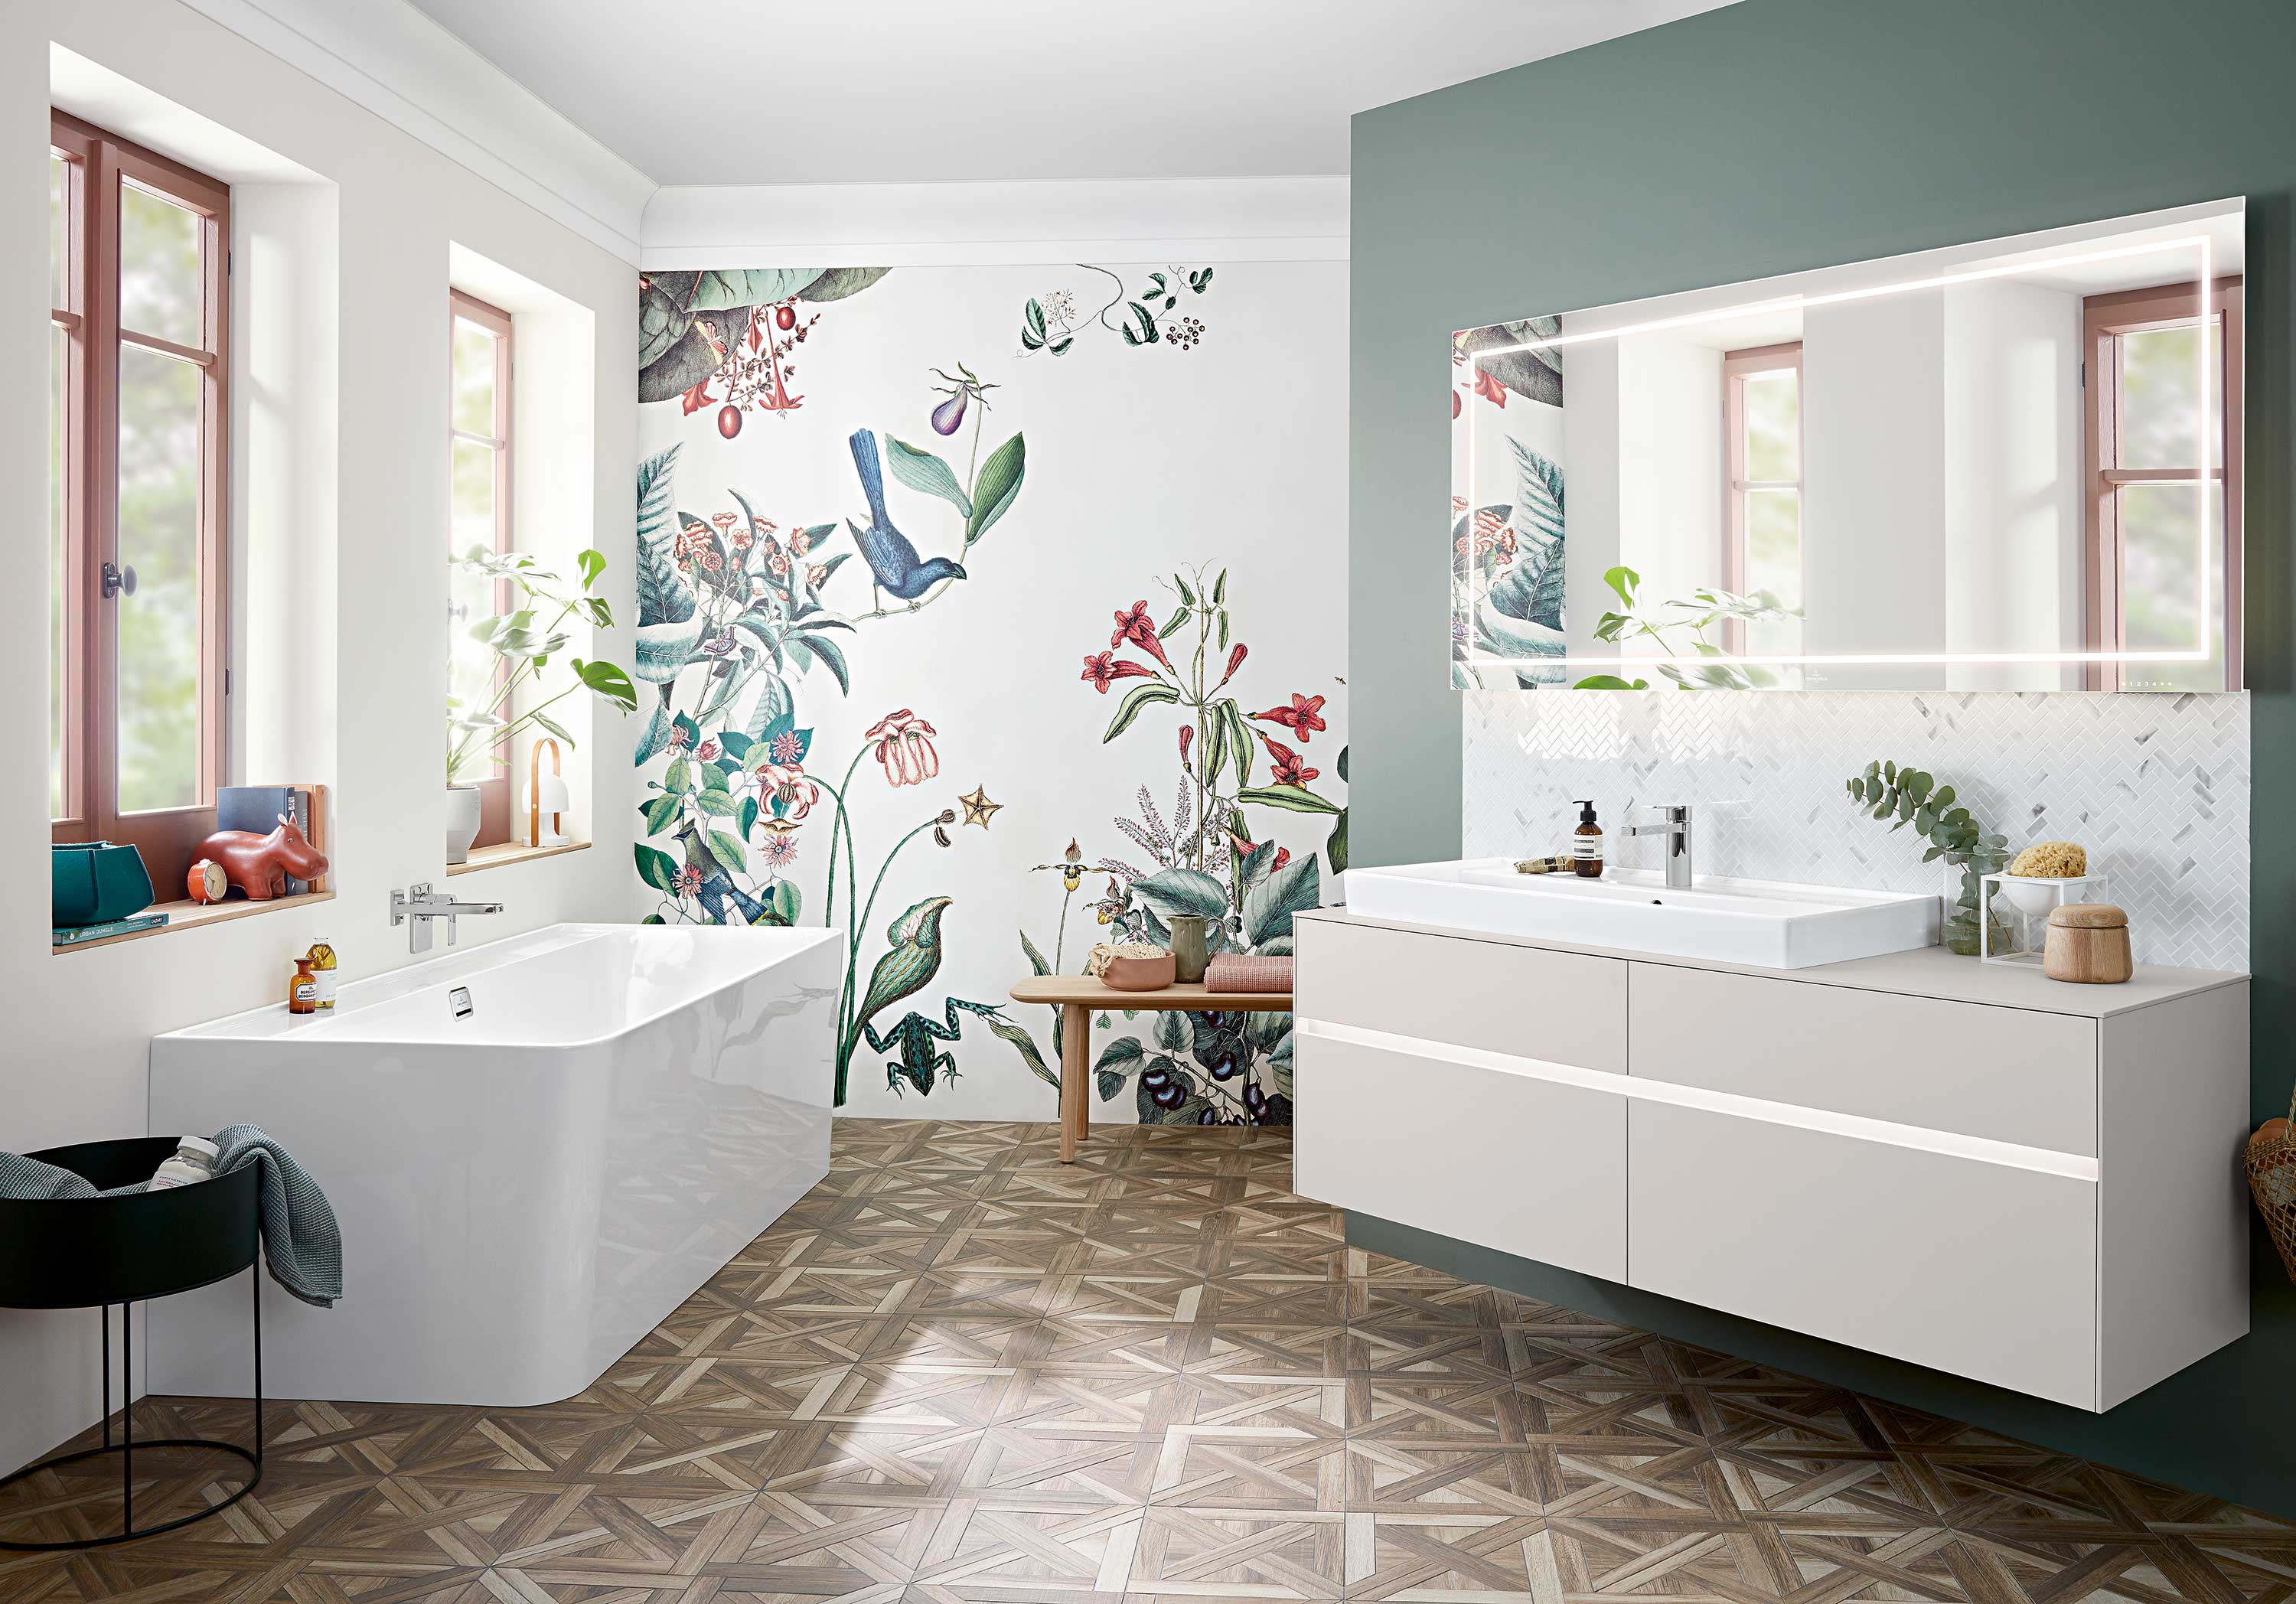 Badezimmer romantisch: Blumentapeten, sehr hell, Weiß- und Petroltöne